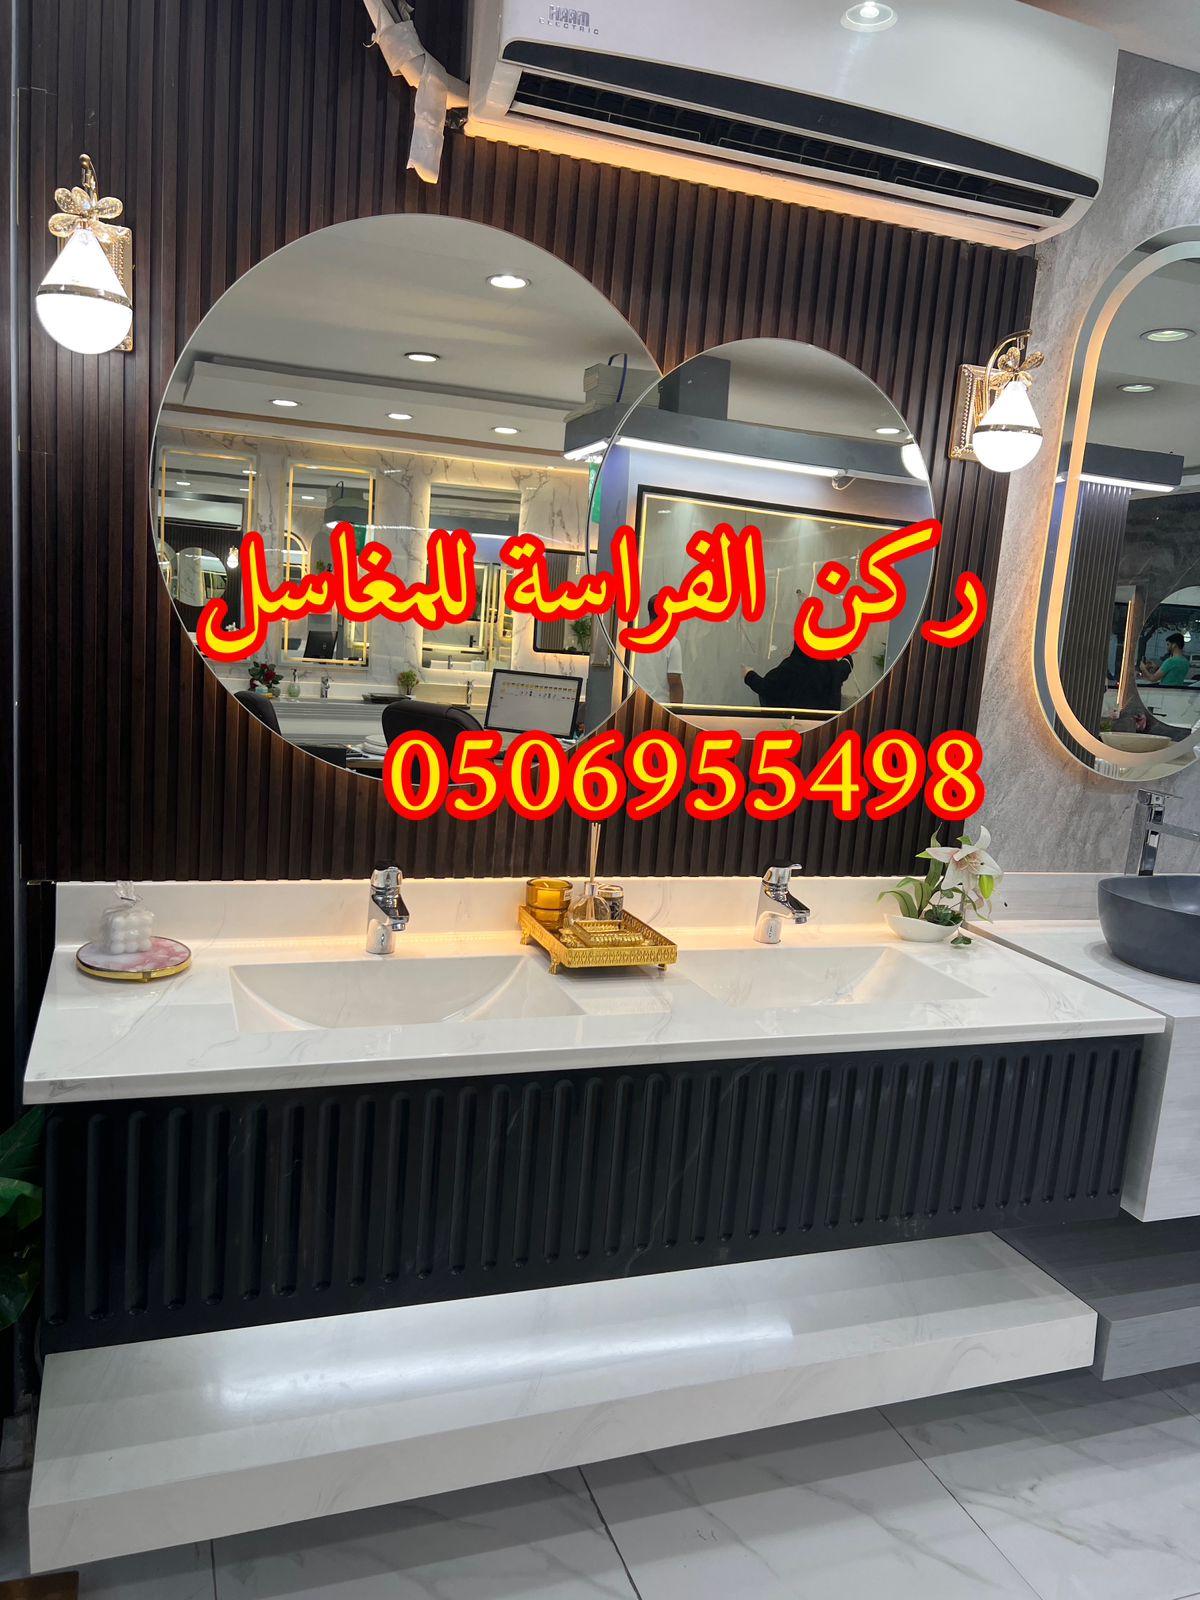 تصميمات مغاسل رخام في الرياض,0506955498 457444111